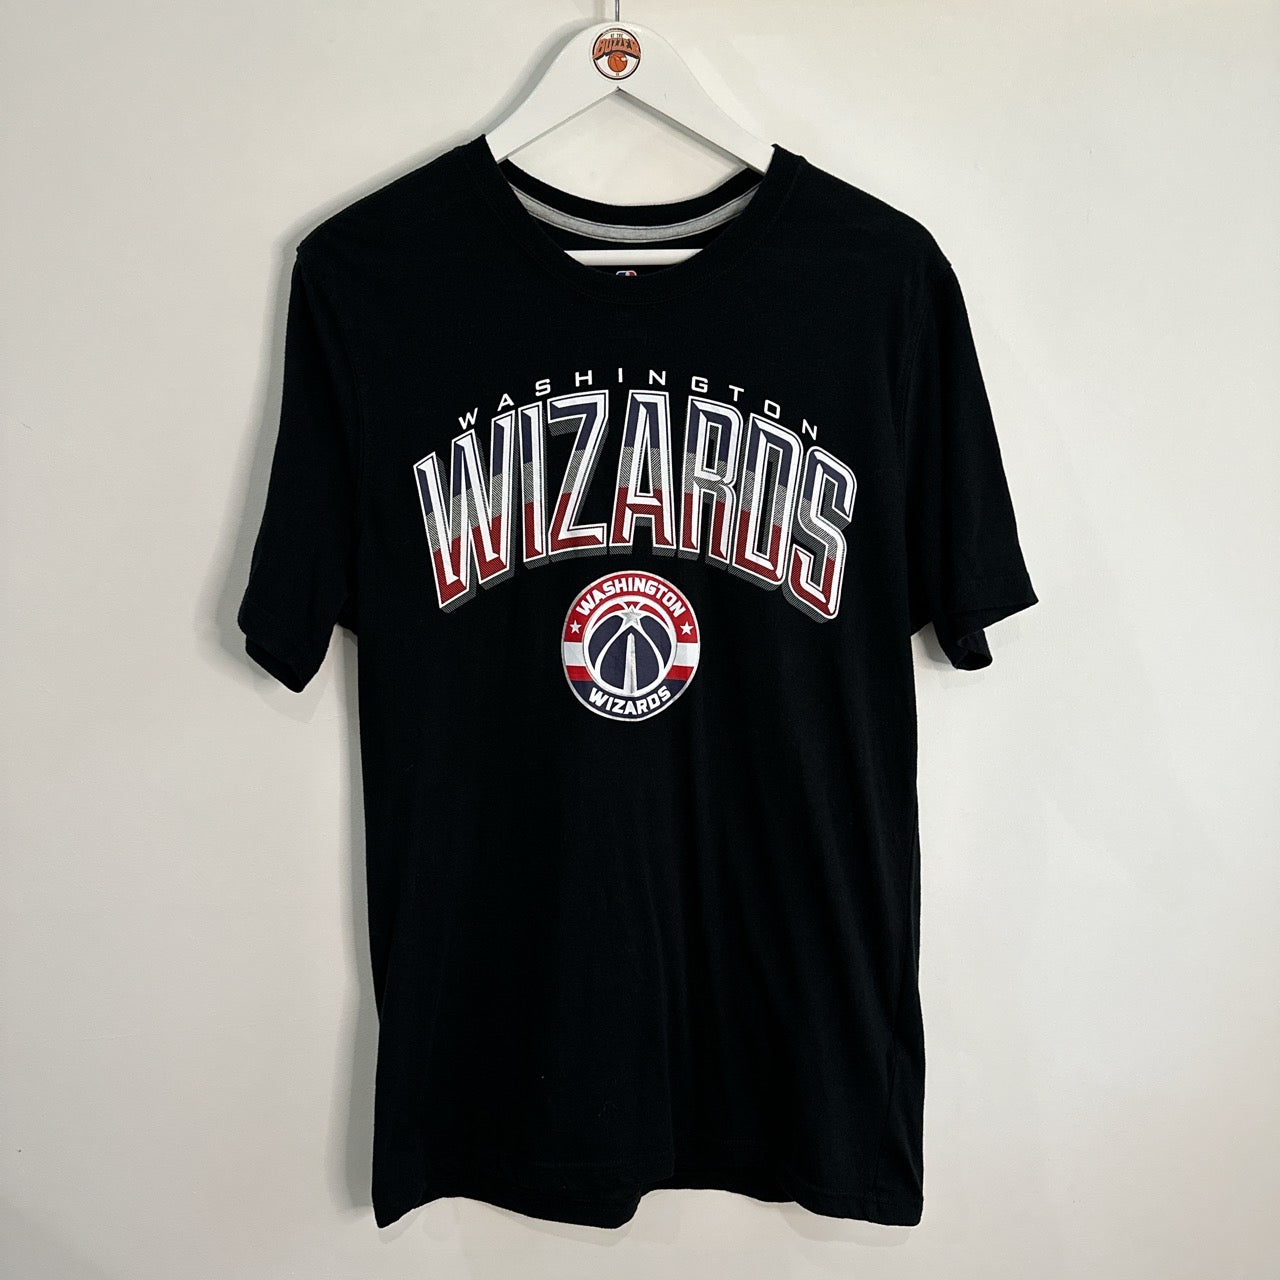 Washington Wizards T shirt - Large